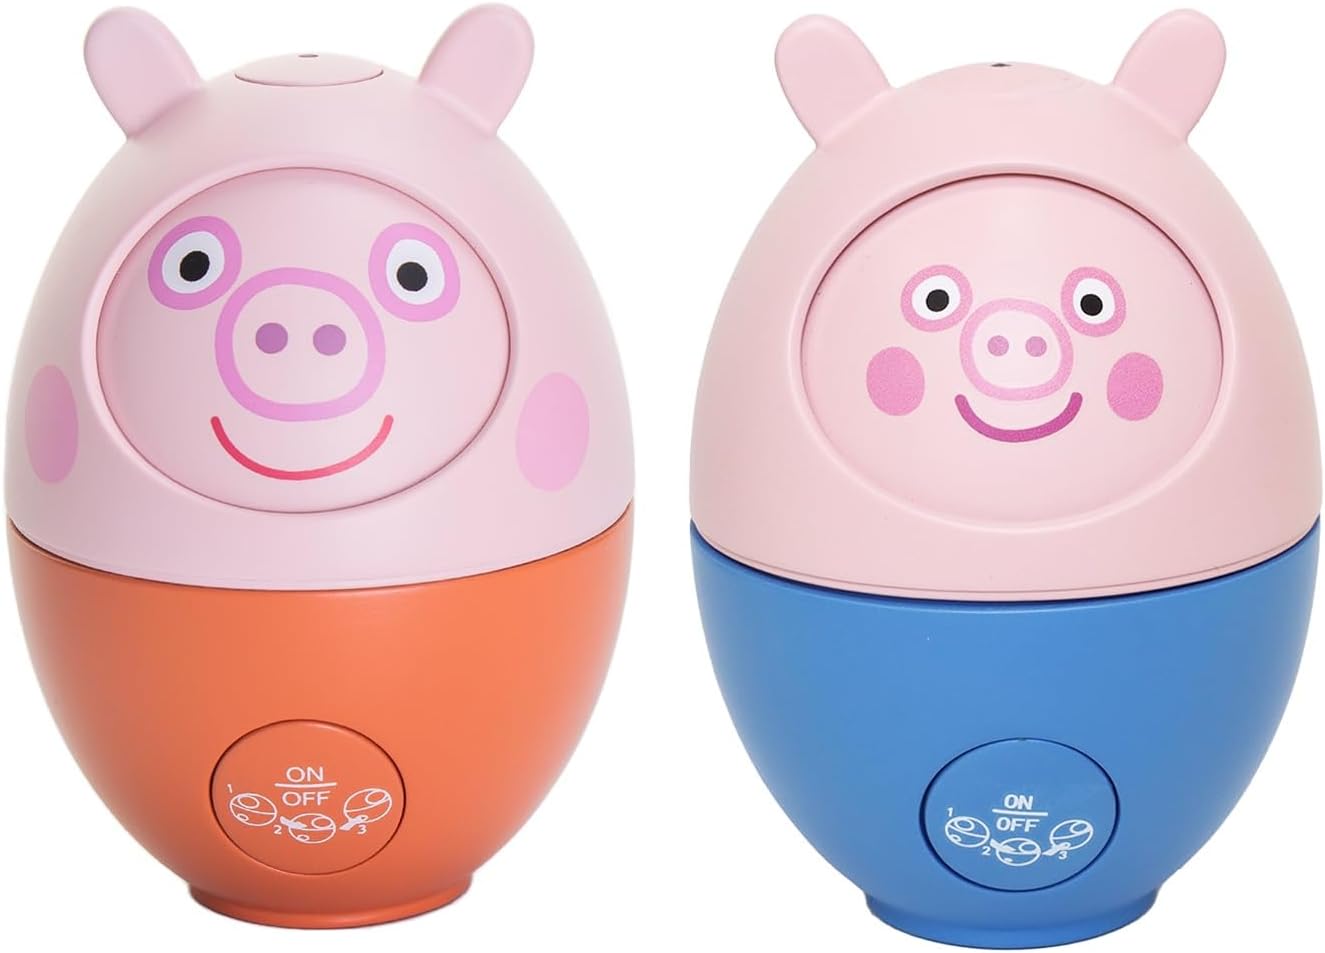 Hide & Seek Favourites Peppa Pig Toys Twin Pack